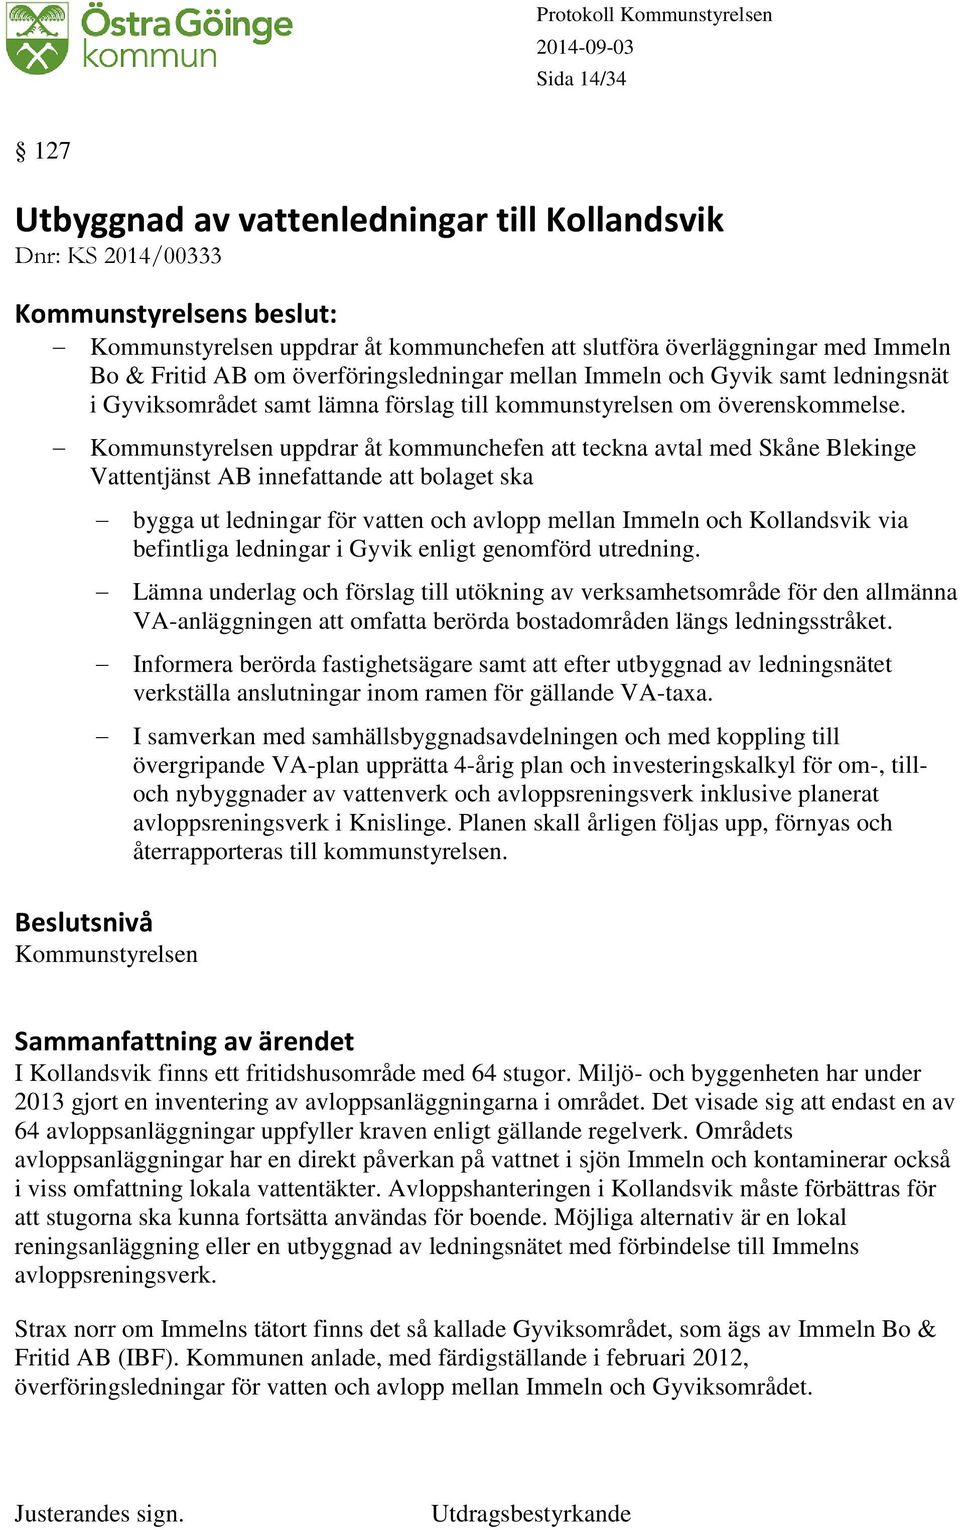 Kommunstyrelsen uppdrar åt kommunchefen att teckna avtal med Skåne Blekinge Vattentjänst AB innefattande att bolaget ska bygga ut ledningar för vatten och avlopp mellan Immeln och Kollandsvik via